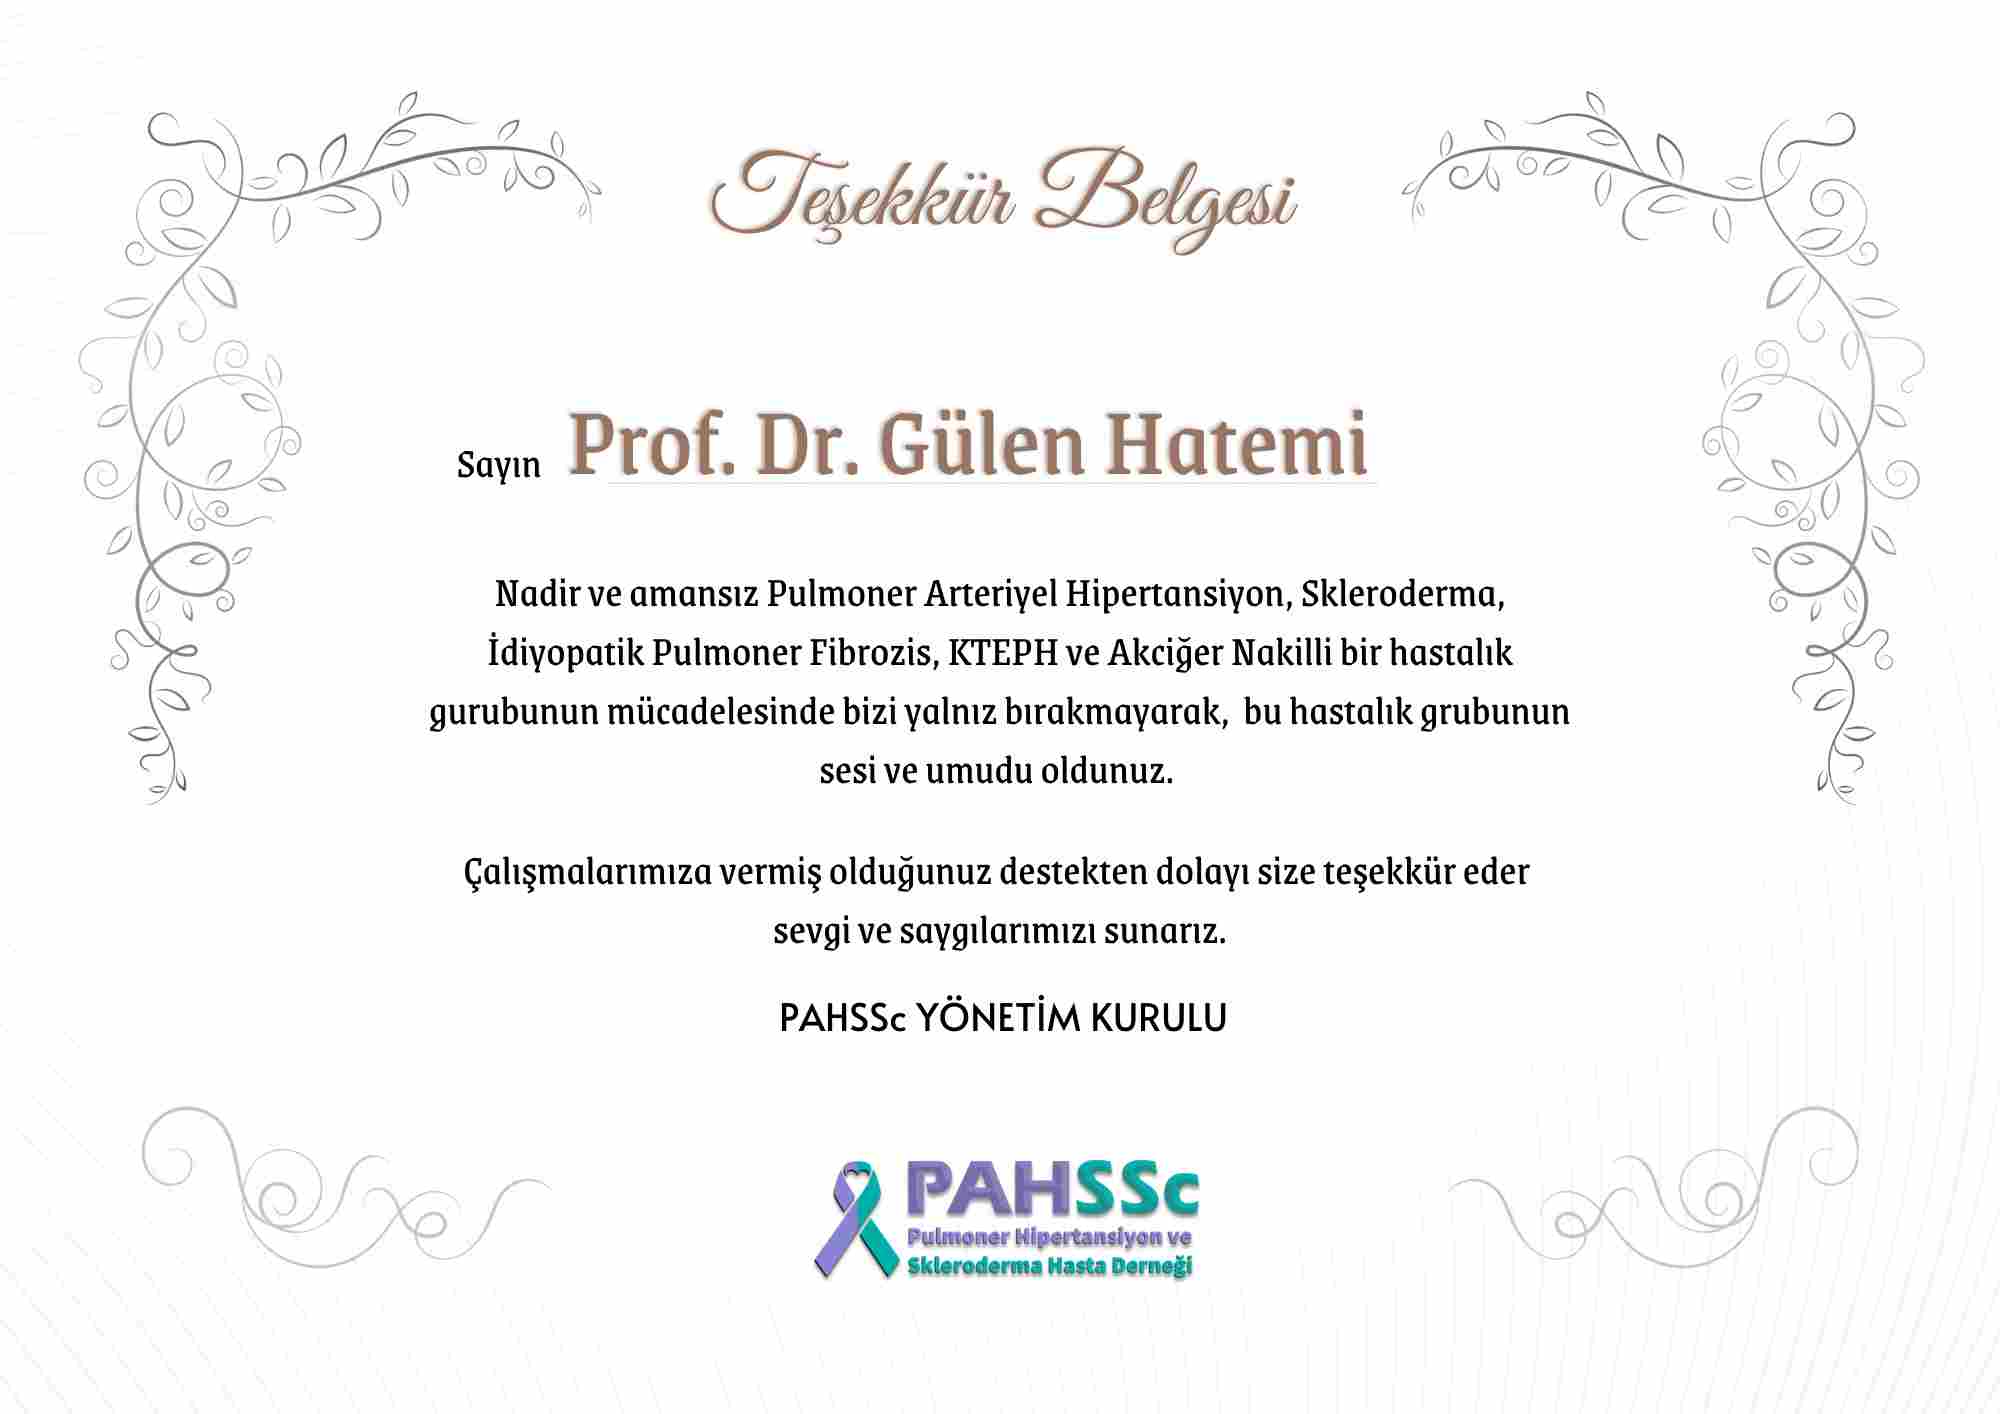 Prof. Dr. Gülen Hatemi